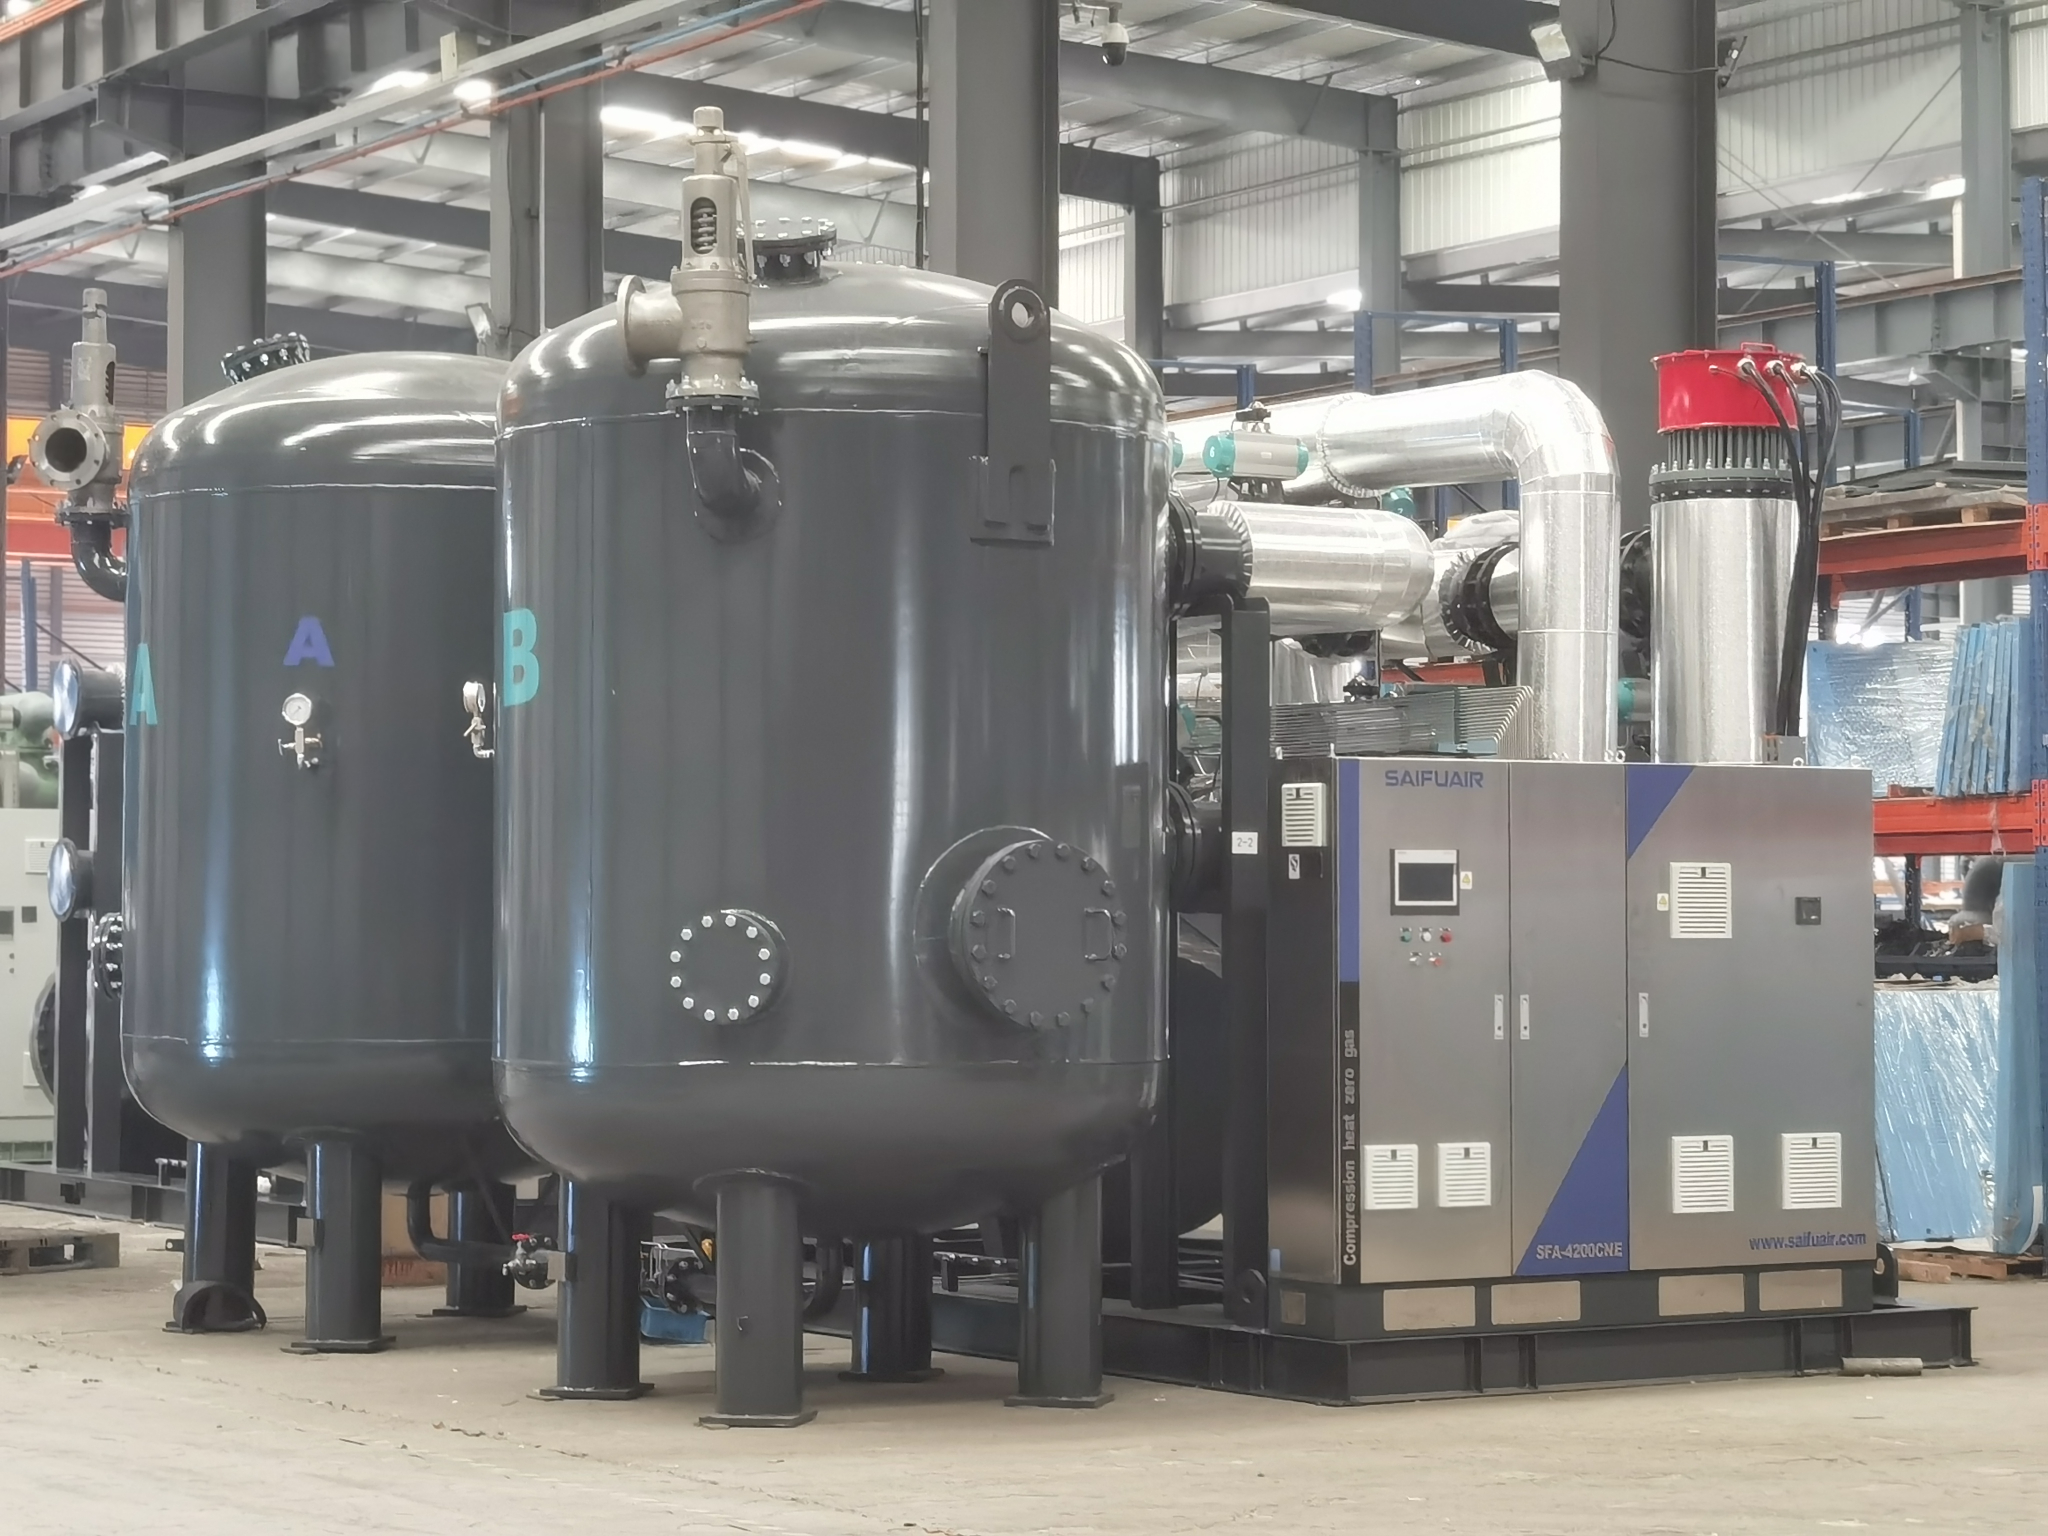 SAIFUAIR 420 cubic zero air consumption compression heat suction dryer production process exposure!